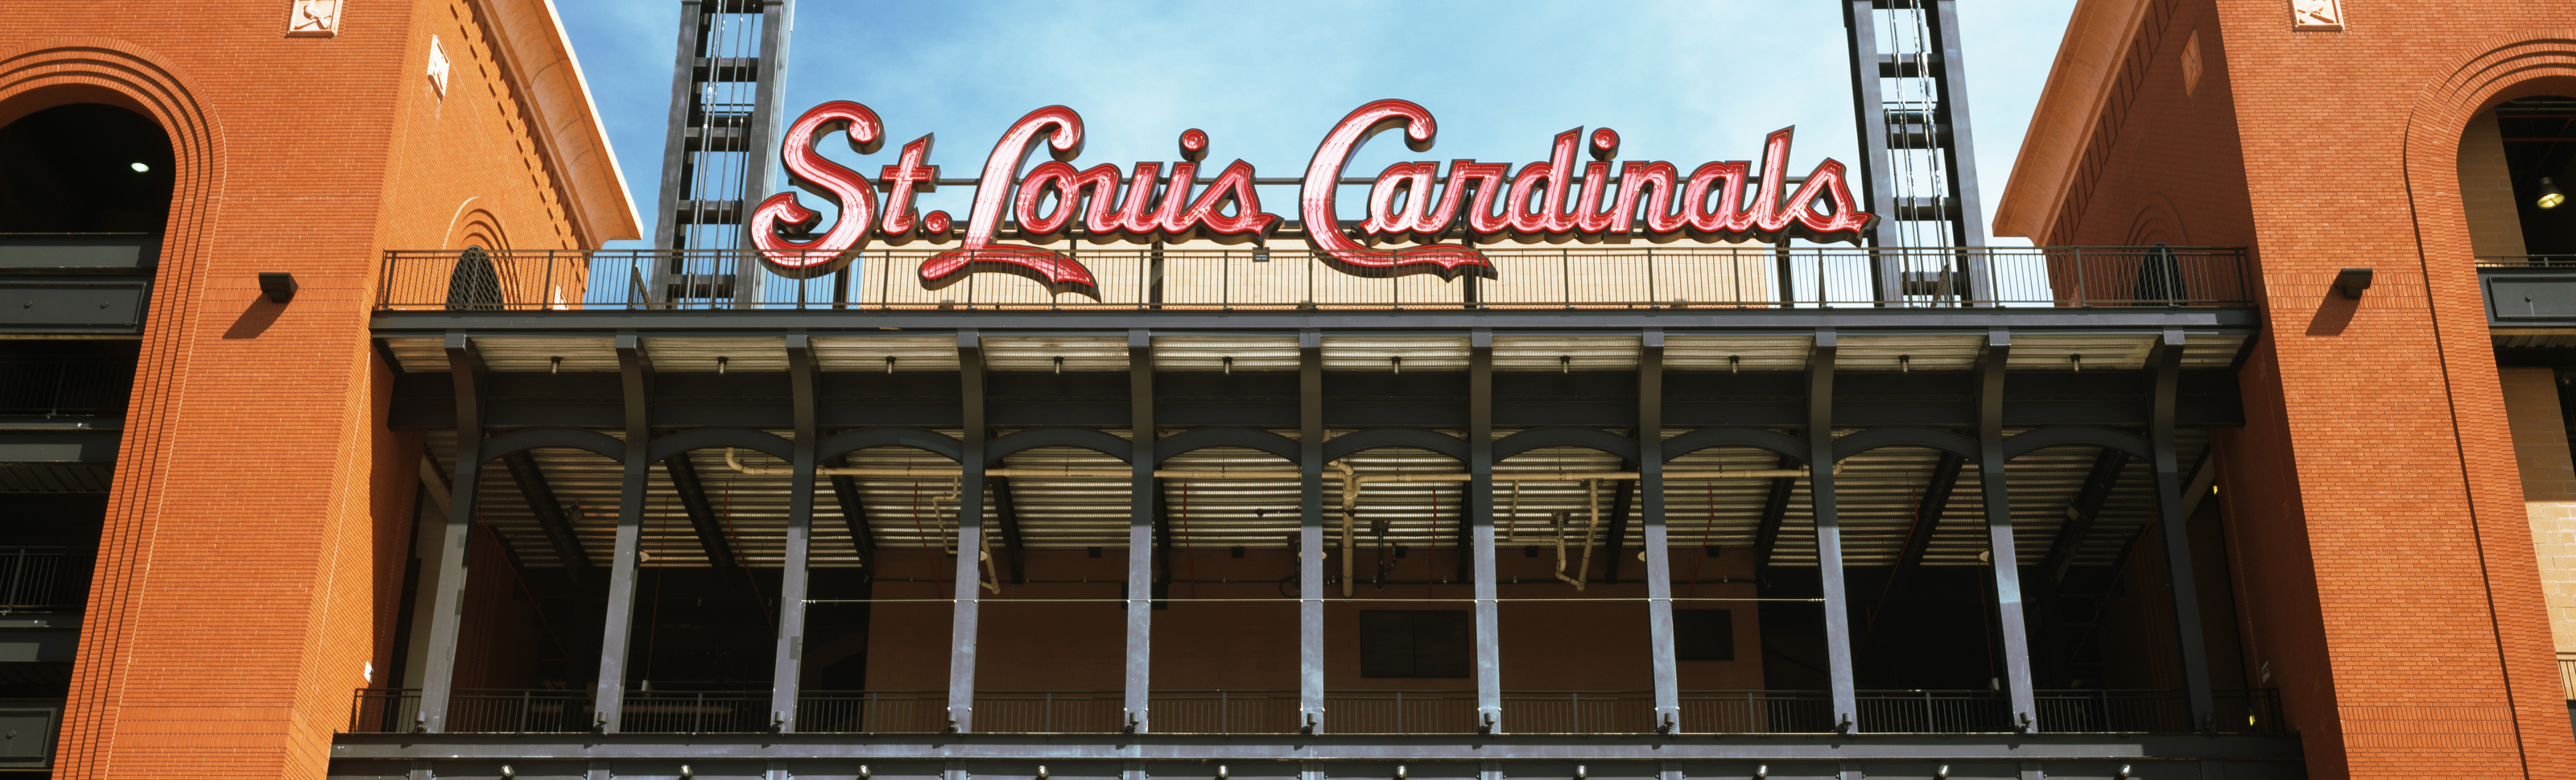 St. Louis Cardinals/Old - Busch Stadium Wall Mural